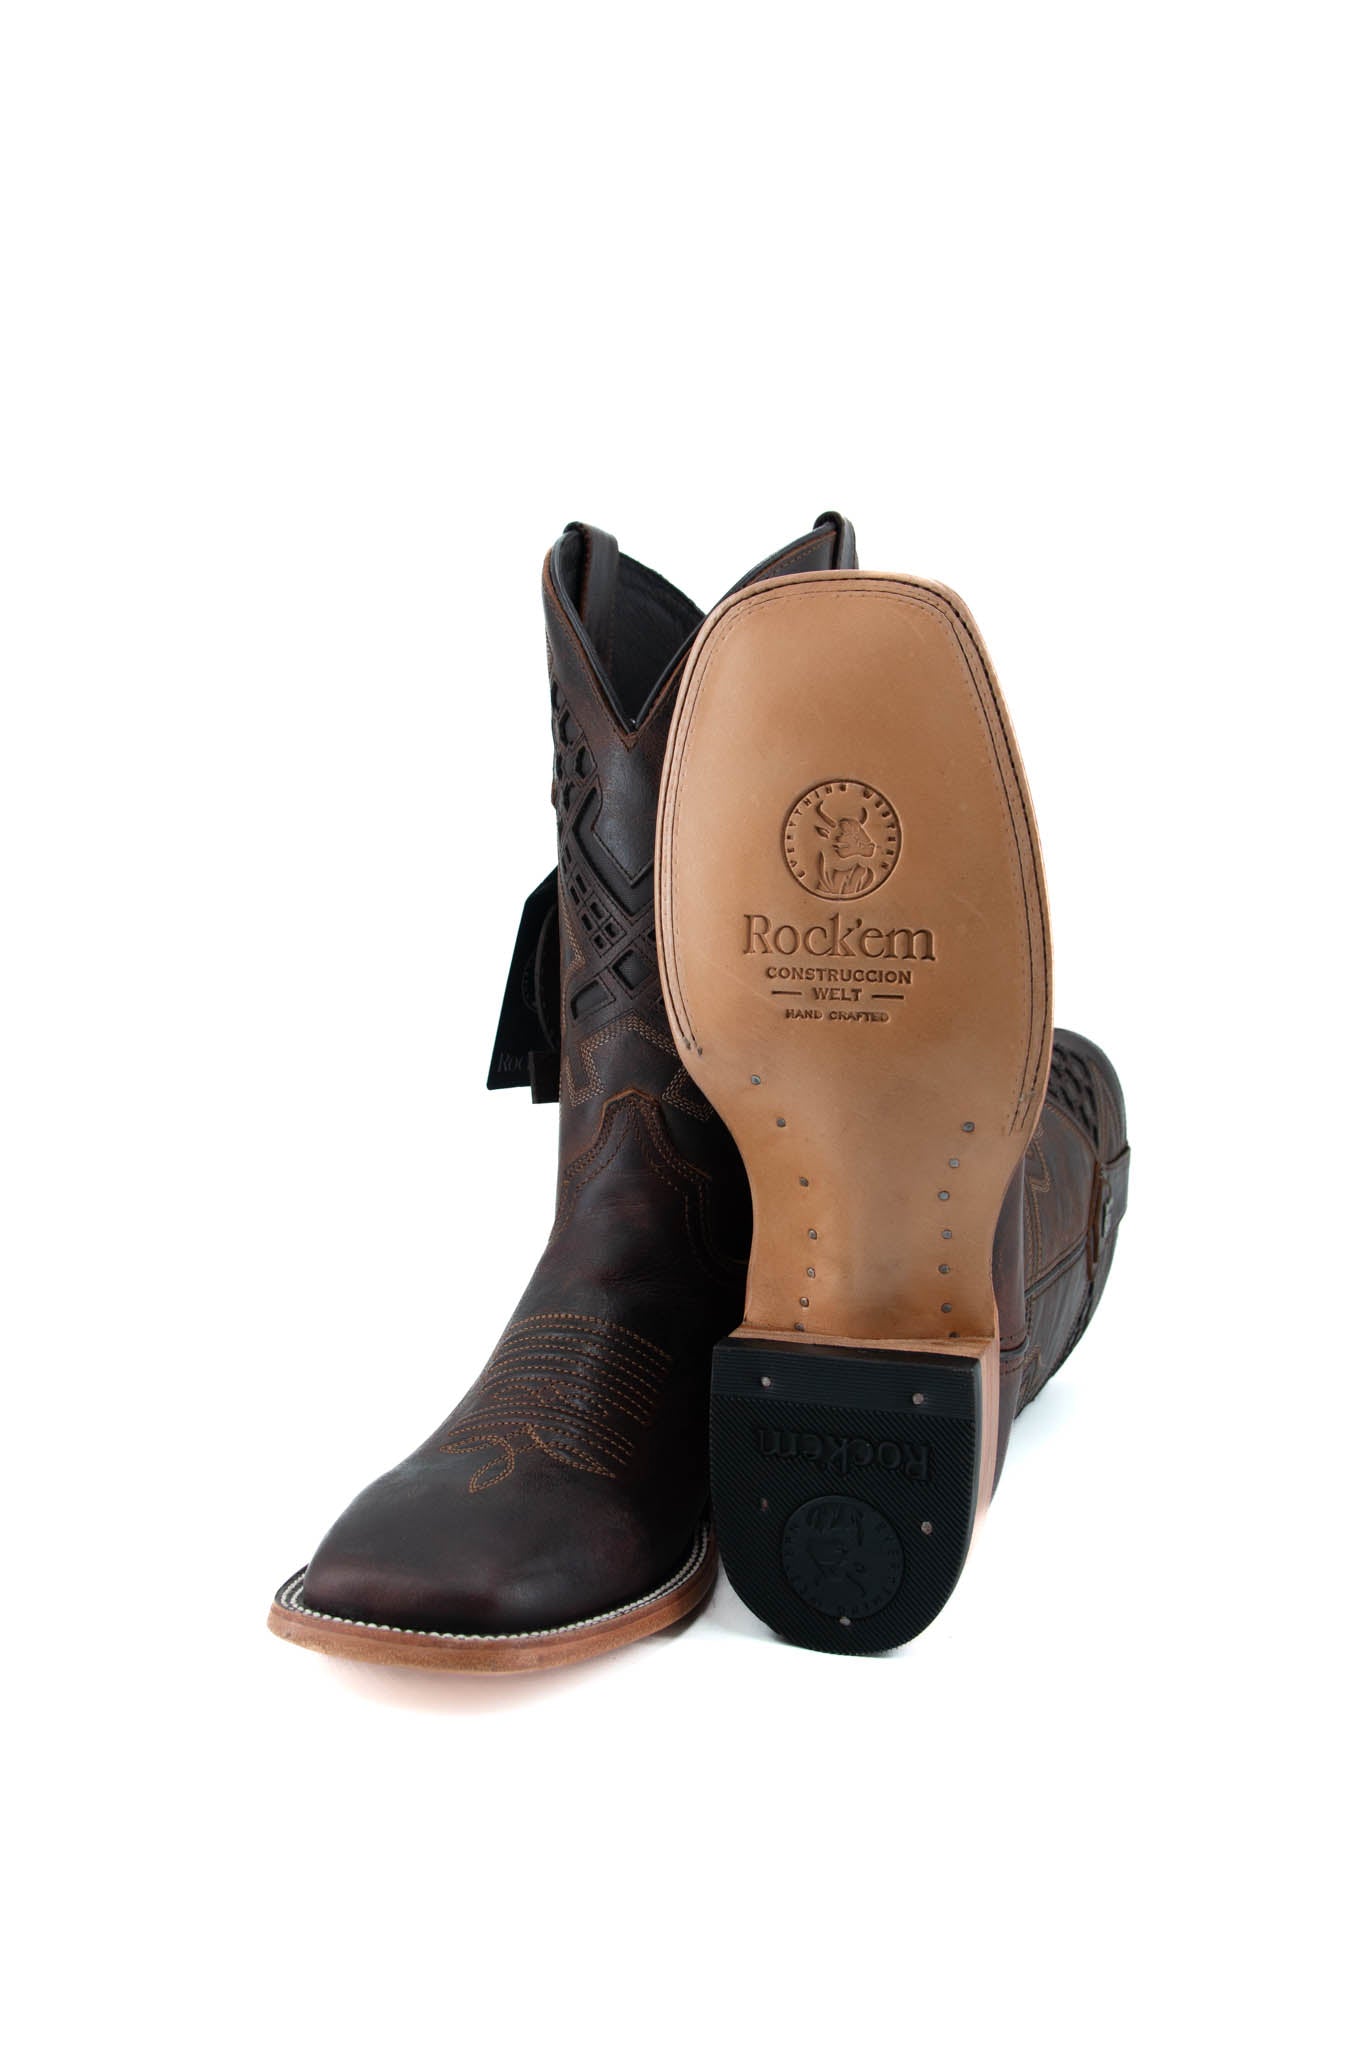 Maya Square Toe Cowboy Boot